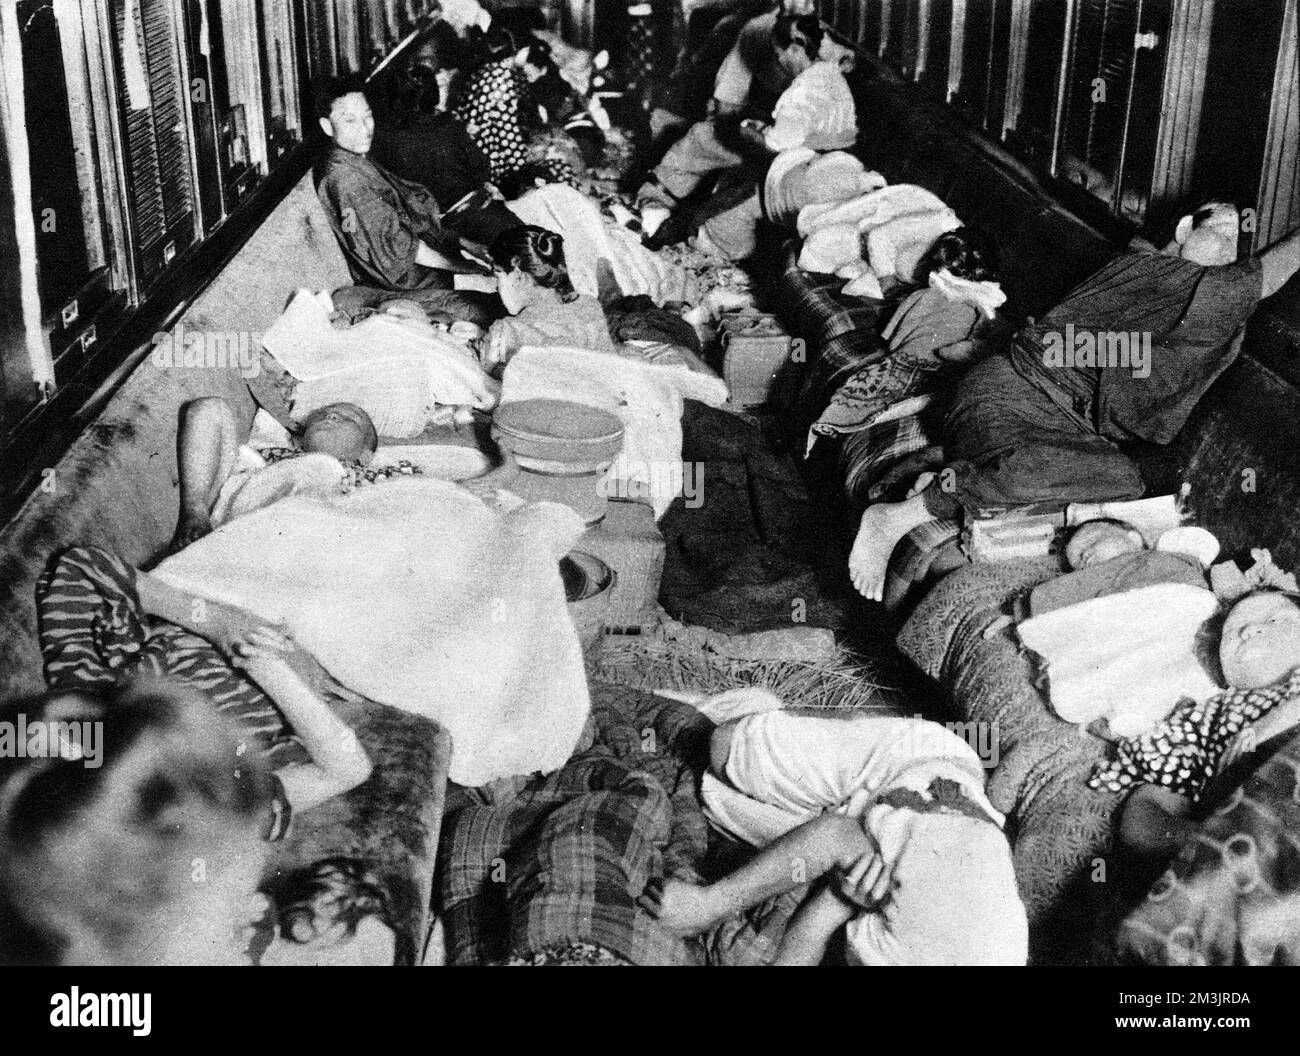 Ein Eisenbahnbunker für die Nacht, in dem Männer, Frauen und Kinder in einer Kutsche auf einem Nebengleis am Bahnhof Numadzu zusammenkamen, nach dem katastrophalen Erdbeben, von dem Tokio und die Nachbarstadt Yokohama im Jahr 1923 heimgesucht wurden. Das Erdbeben ereignete sich am 1.. September mittags, zu einer Zeit, als viele Menschen ihre Mahlzeiten zubereiteten. Die Brände breiteten sich aus und zerstörten alles, was das Erdbeben hinterlassen hatte. Die Zahl der Todesopfer stieg auf über 70000, und viele weitere Menschen blieben obdachlos. Datum: 1923 Stockfoto